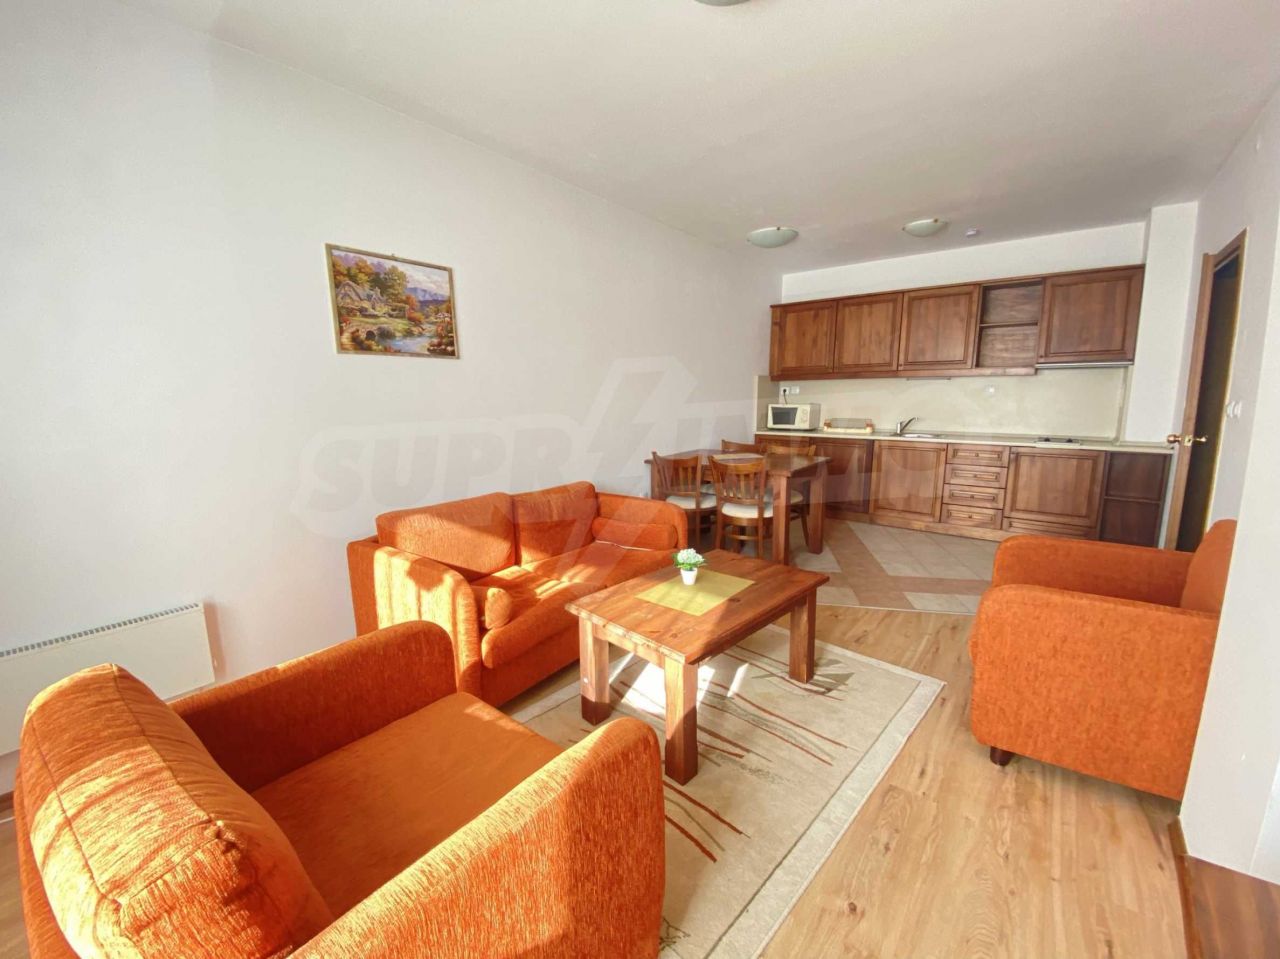 Apartment in Bansko, Bulgaria, 62.54 sq.m - picture 1